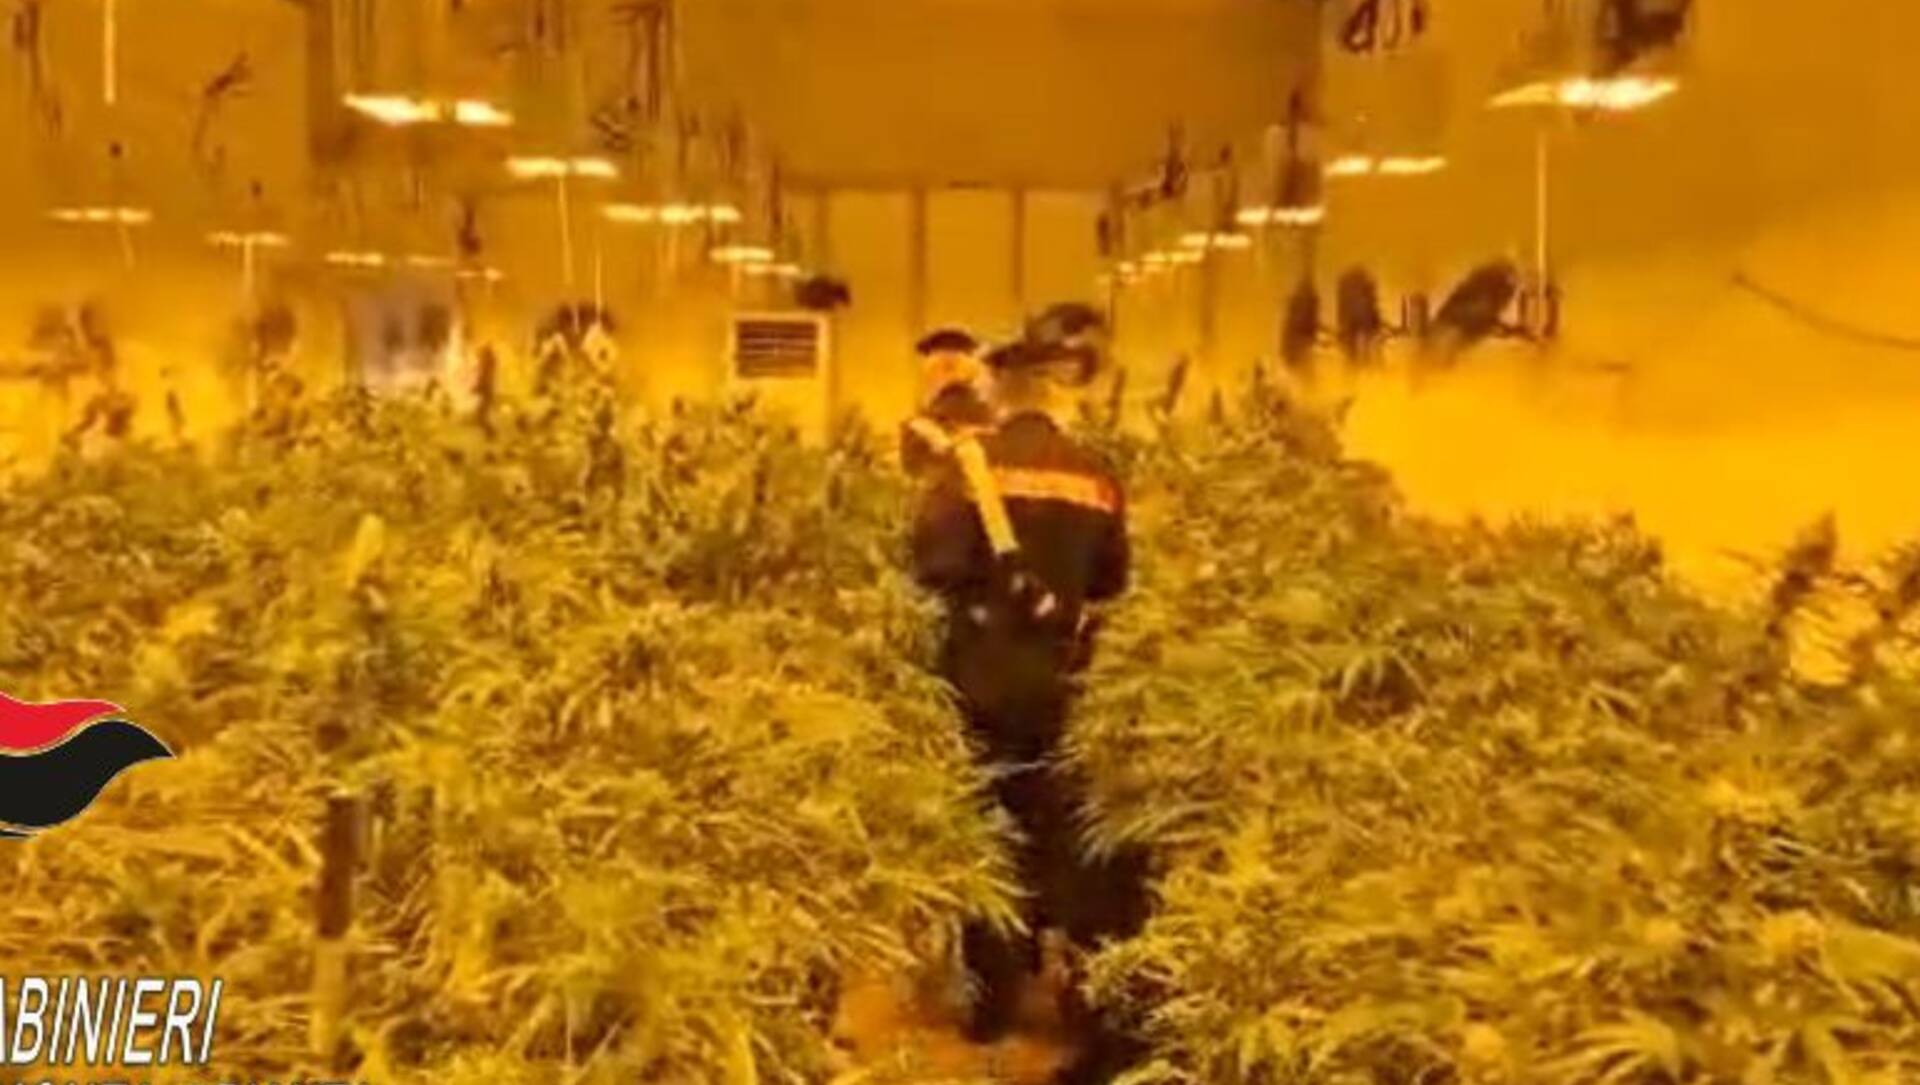 Serra indoor che avrebbe fruttato un milione di euro di marijuana: carabinieri sequestrano 800 piante, ventilatori e lampade riscaldanti